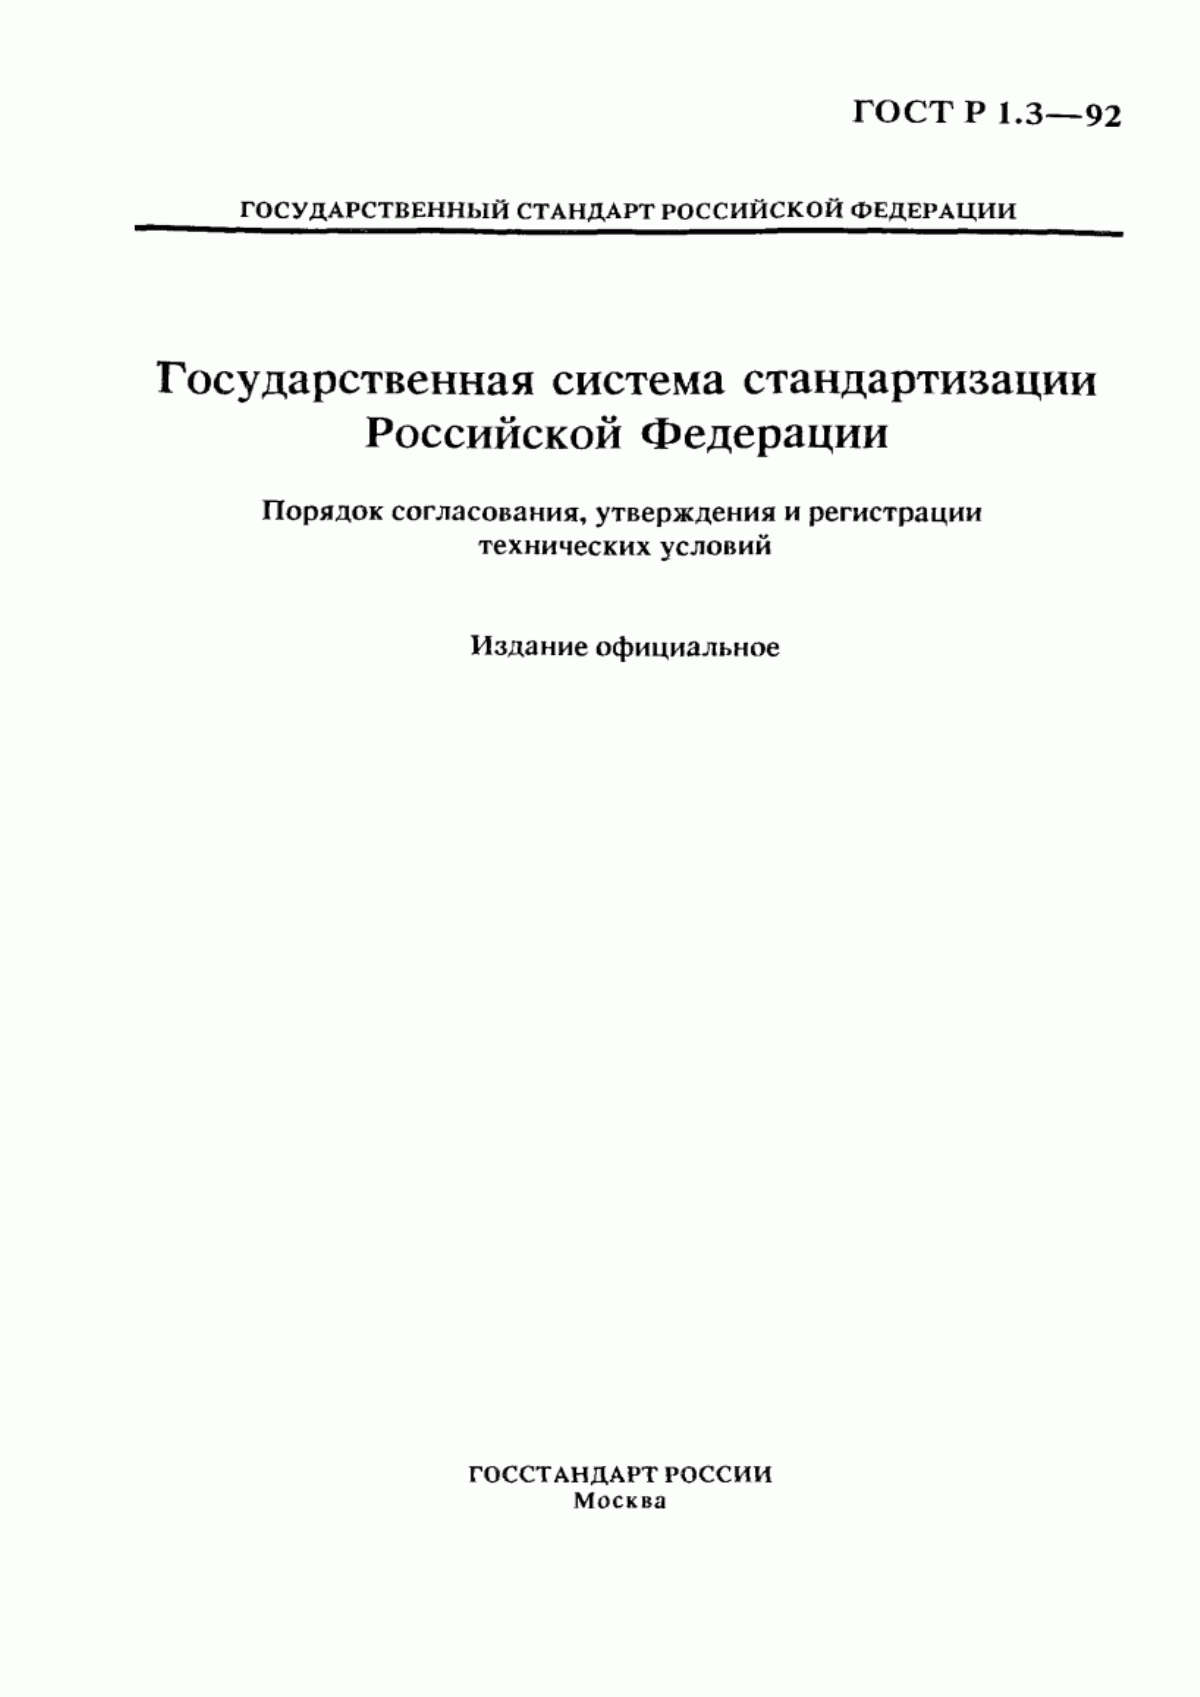 ГОСТ Р 1.3-92 Государственная система стандартизации Российской Федерации. Порядок согласования, утверждения и регистрации технических условий